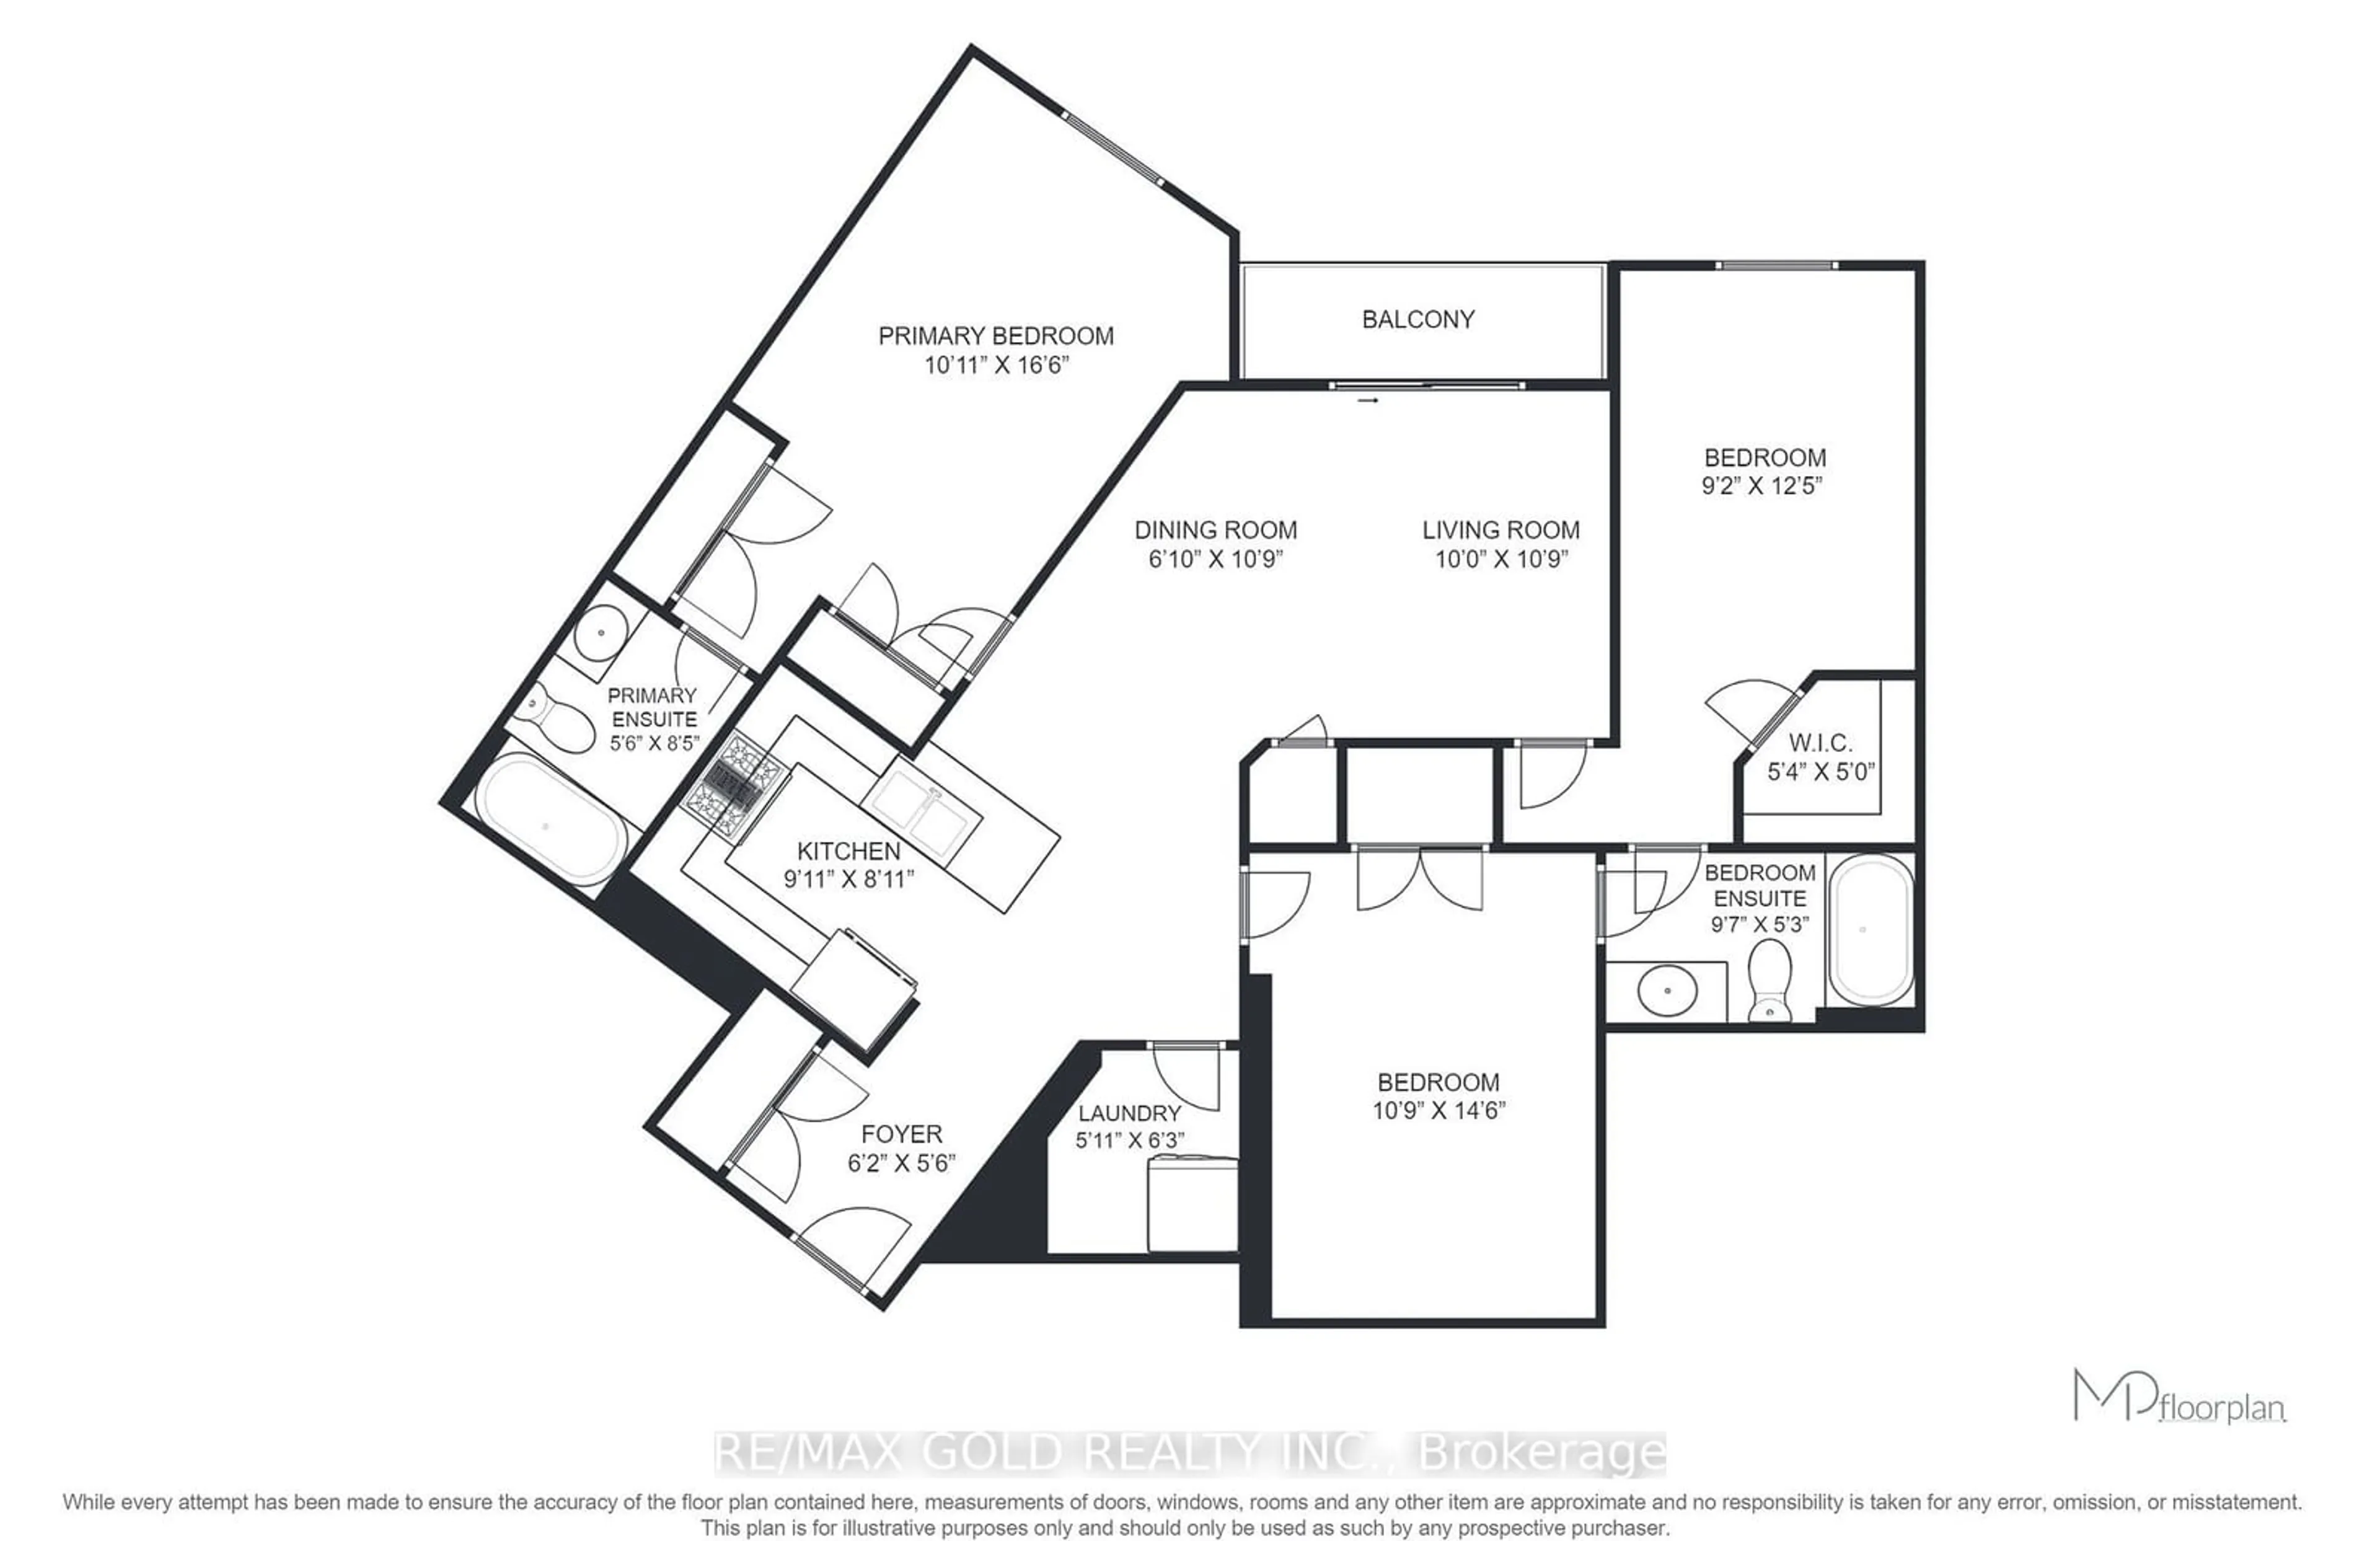 Floor plan for 39 New Delhi Dr #209, Markham Ontario L3S 0E1